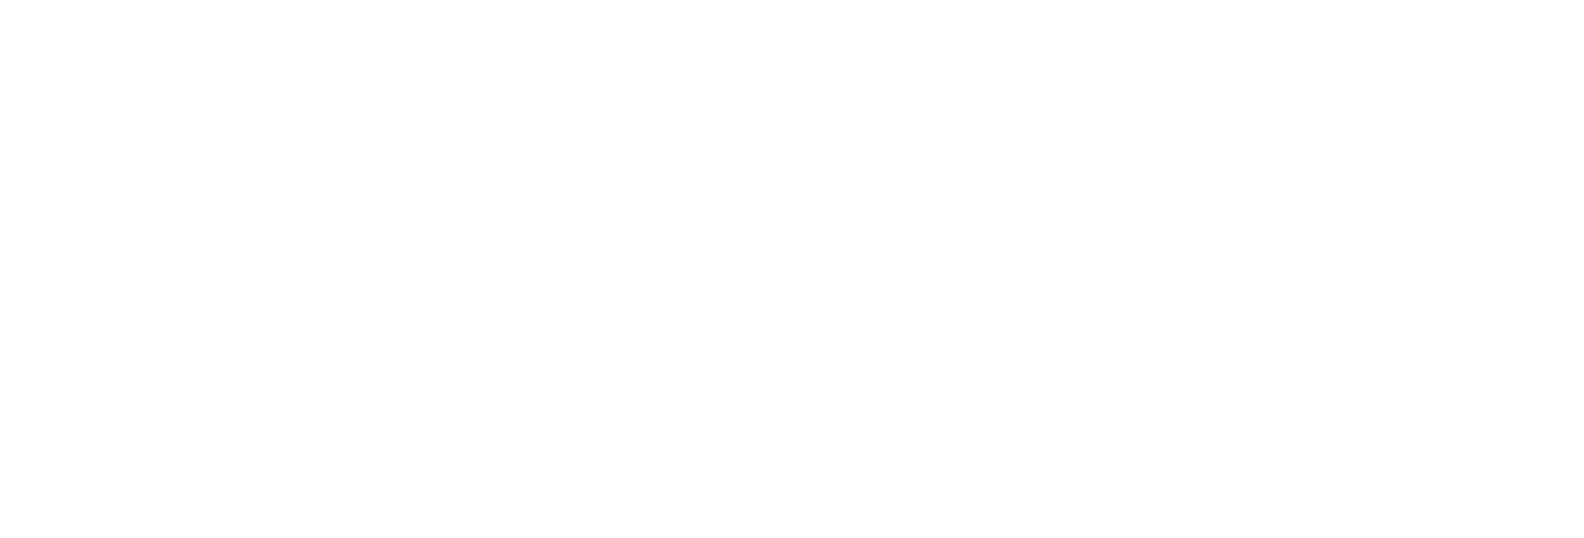 Rithm Capital logo grand pour les fonds sombres (PNG transparent)